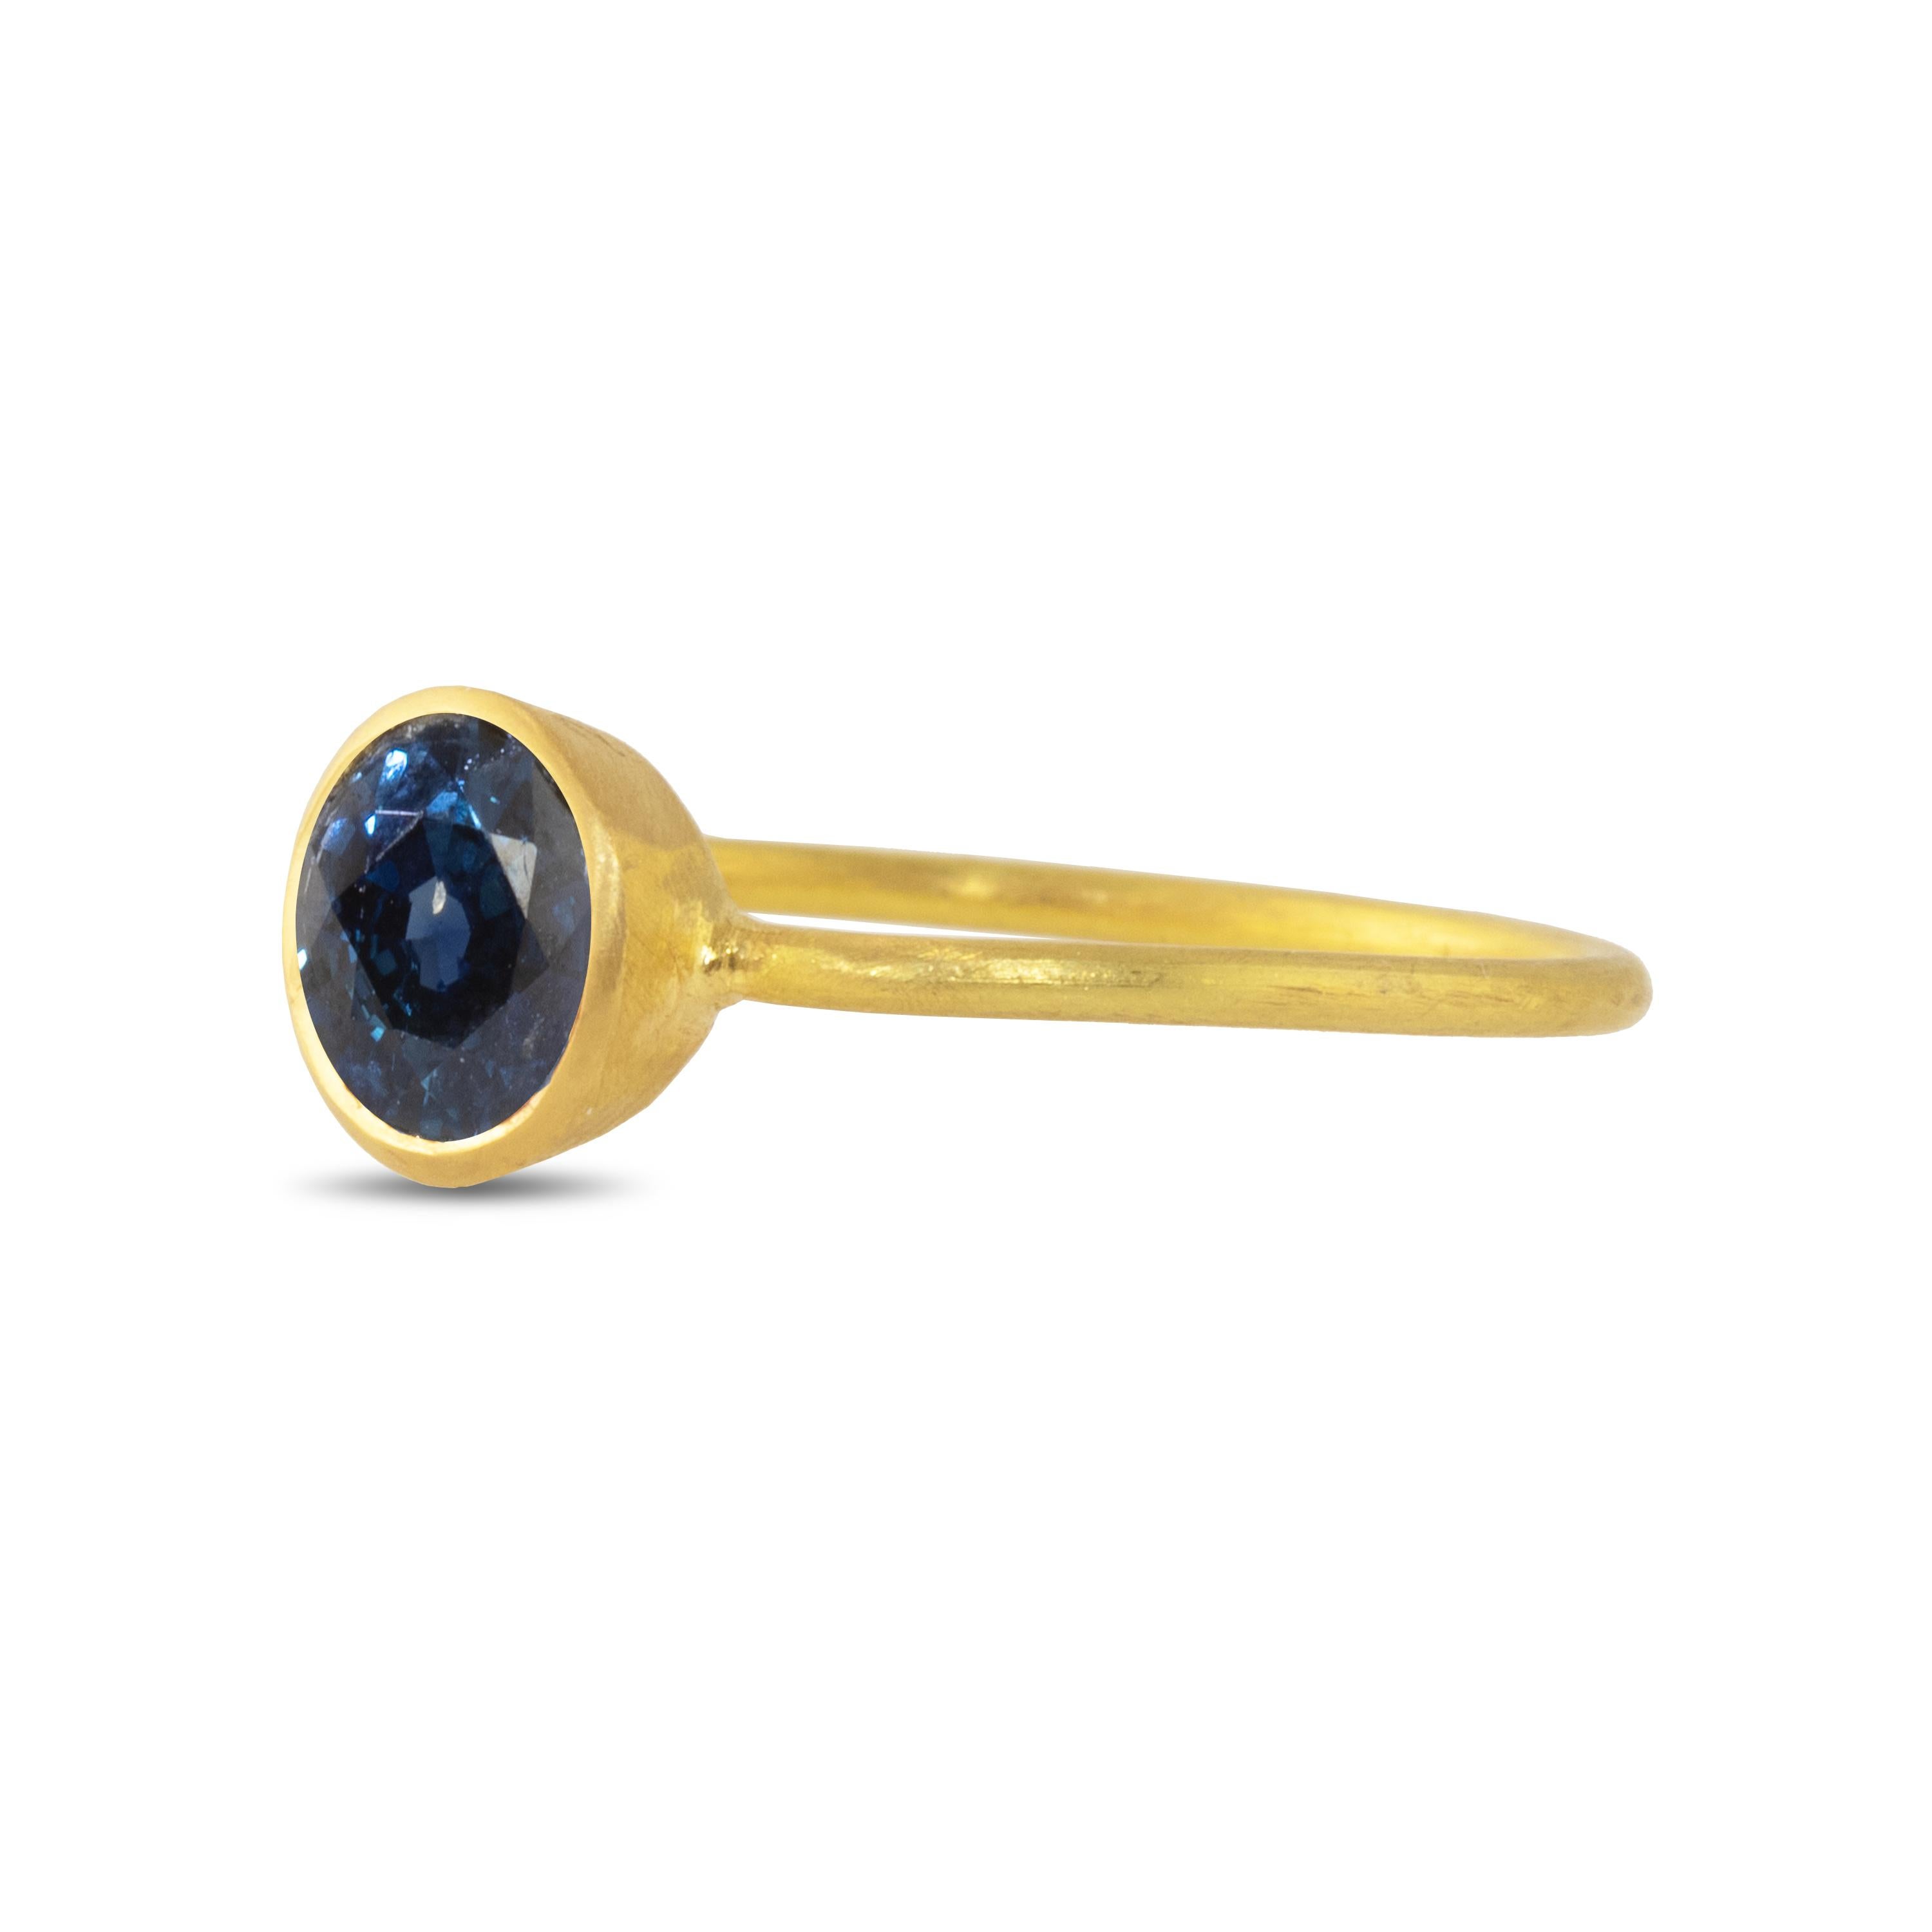 Der 22-karätige Goldring ist mit einem tiefblauen, intensiven Saphir besetzt. Tragen Sie ihn allein oder in Kombination mit anderen Ringen, um einen Farbakzent zu setzen.  Der Saphir ist 6,65 mm groß und hat 0,80 Karat.

Der Saphir ist auch als